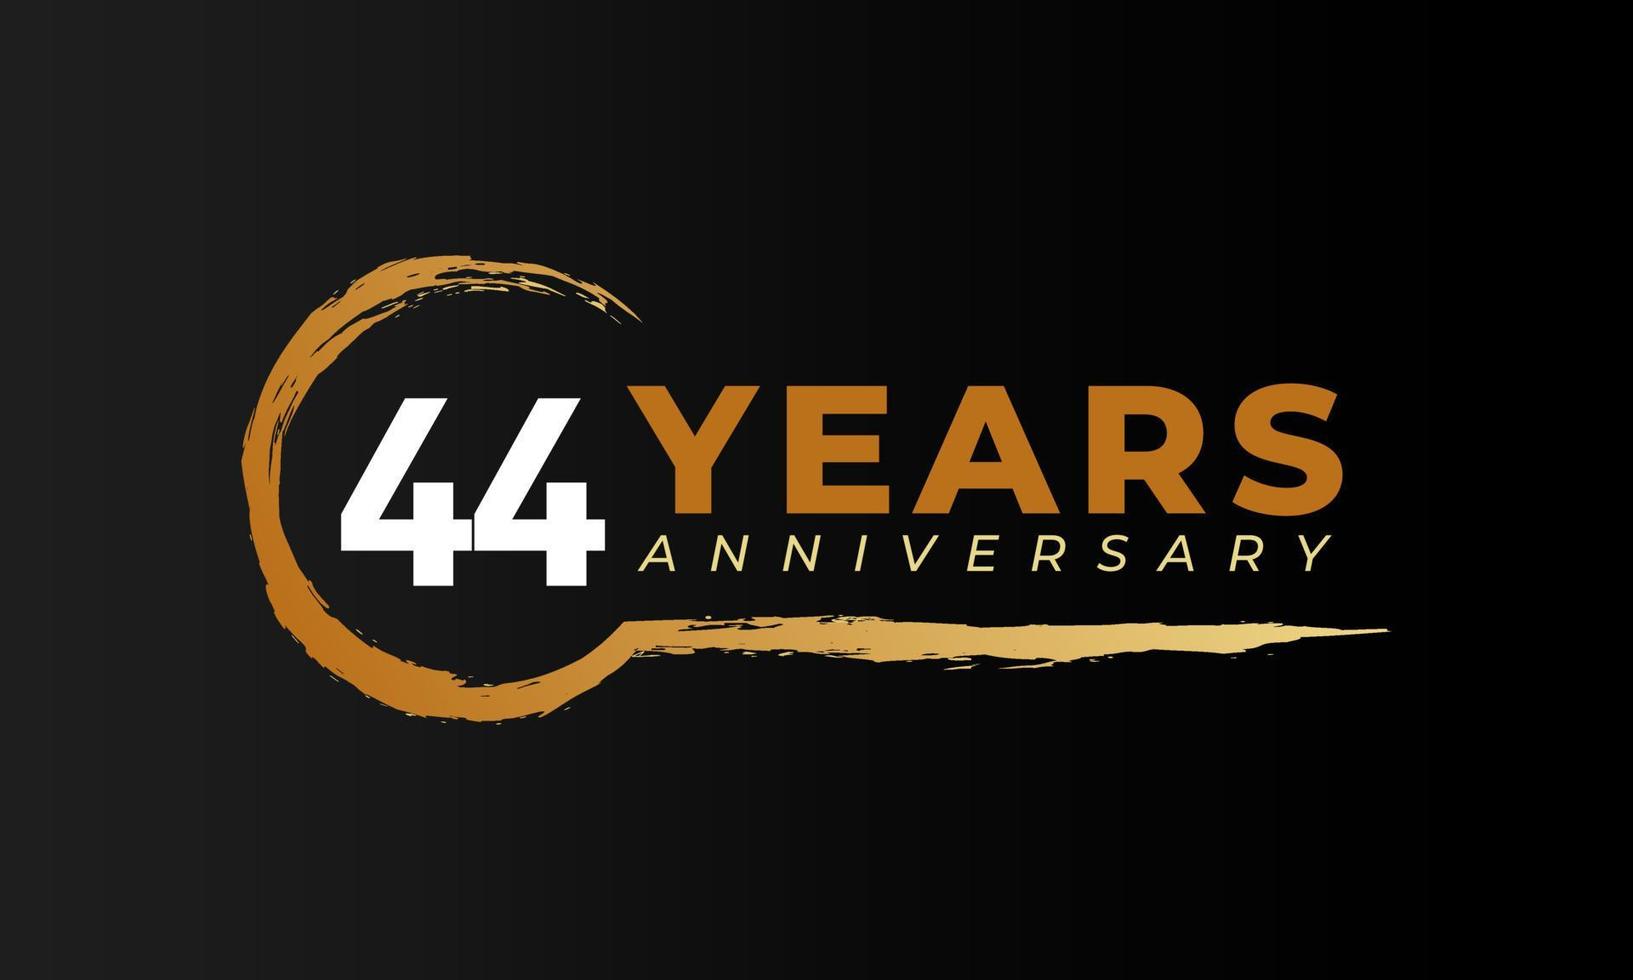 Célébration du 44e anniversaire avec une brosse circulaire de couleur dorée. joyeux anniversaire salutation célèbre l'événement isolé sur fond noir vecteur